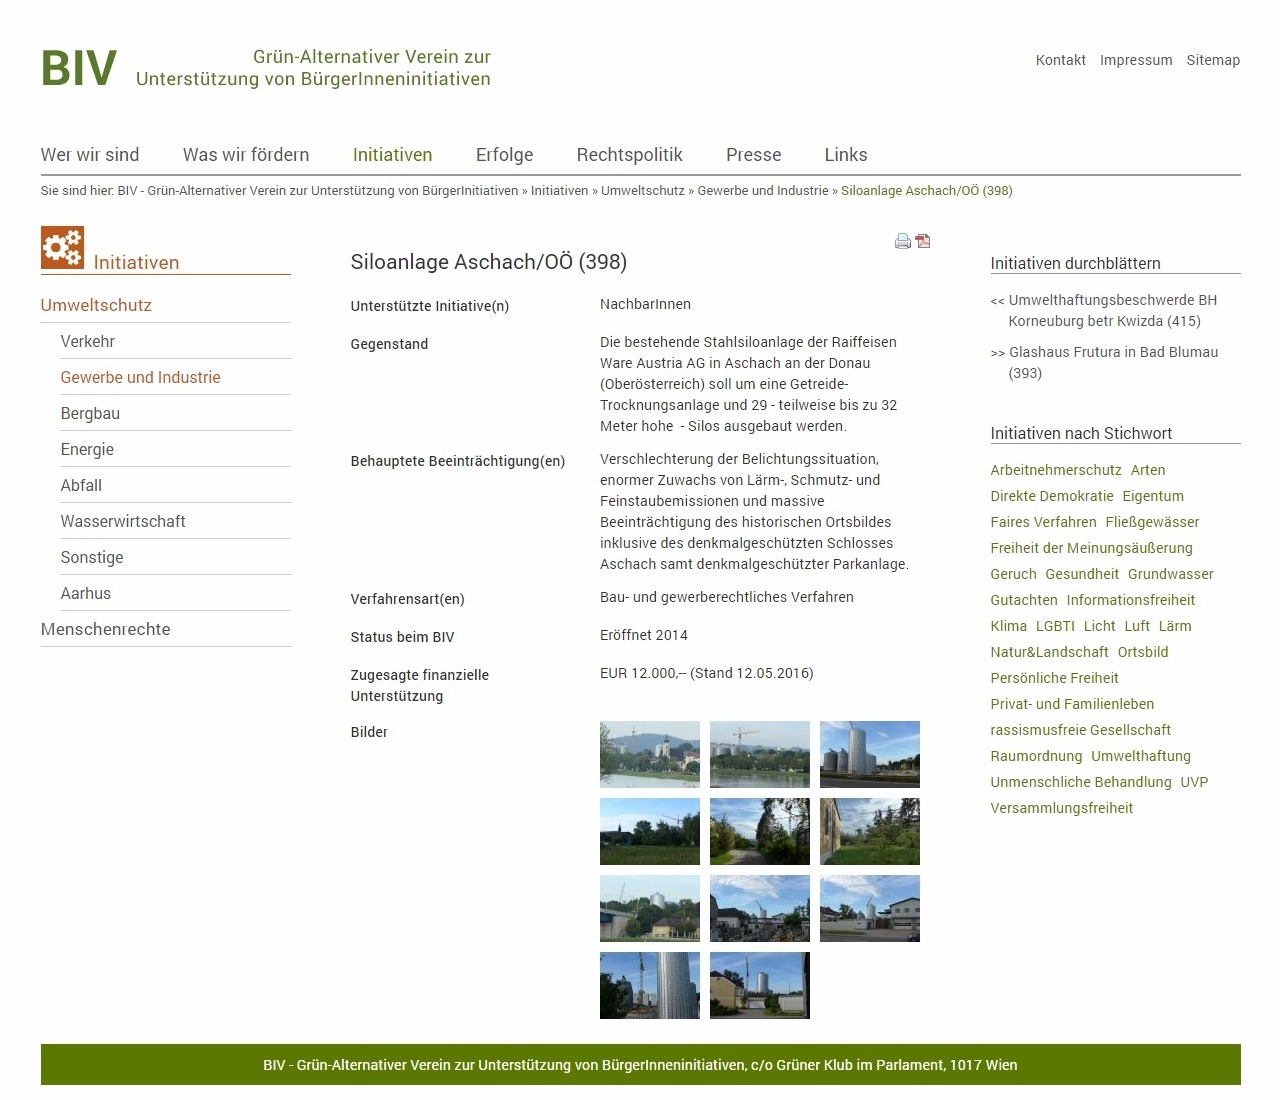 BIV - Grün-Alternativer Verein zur Unterstützung von BürgerInneninitiativen